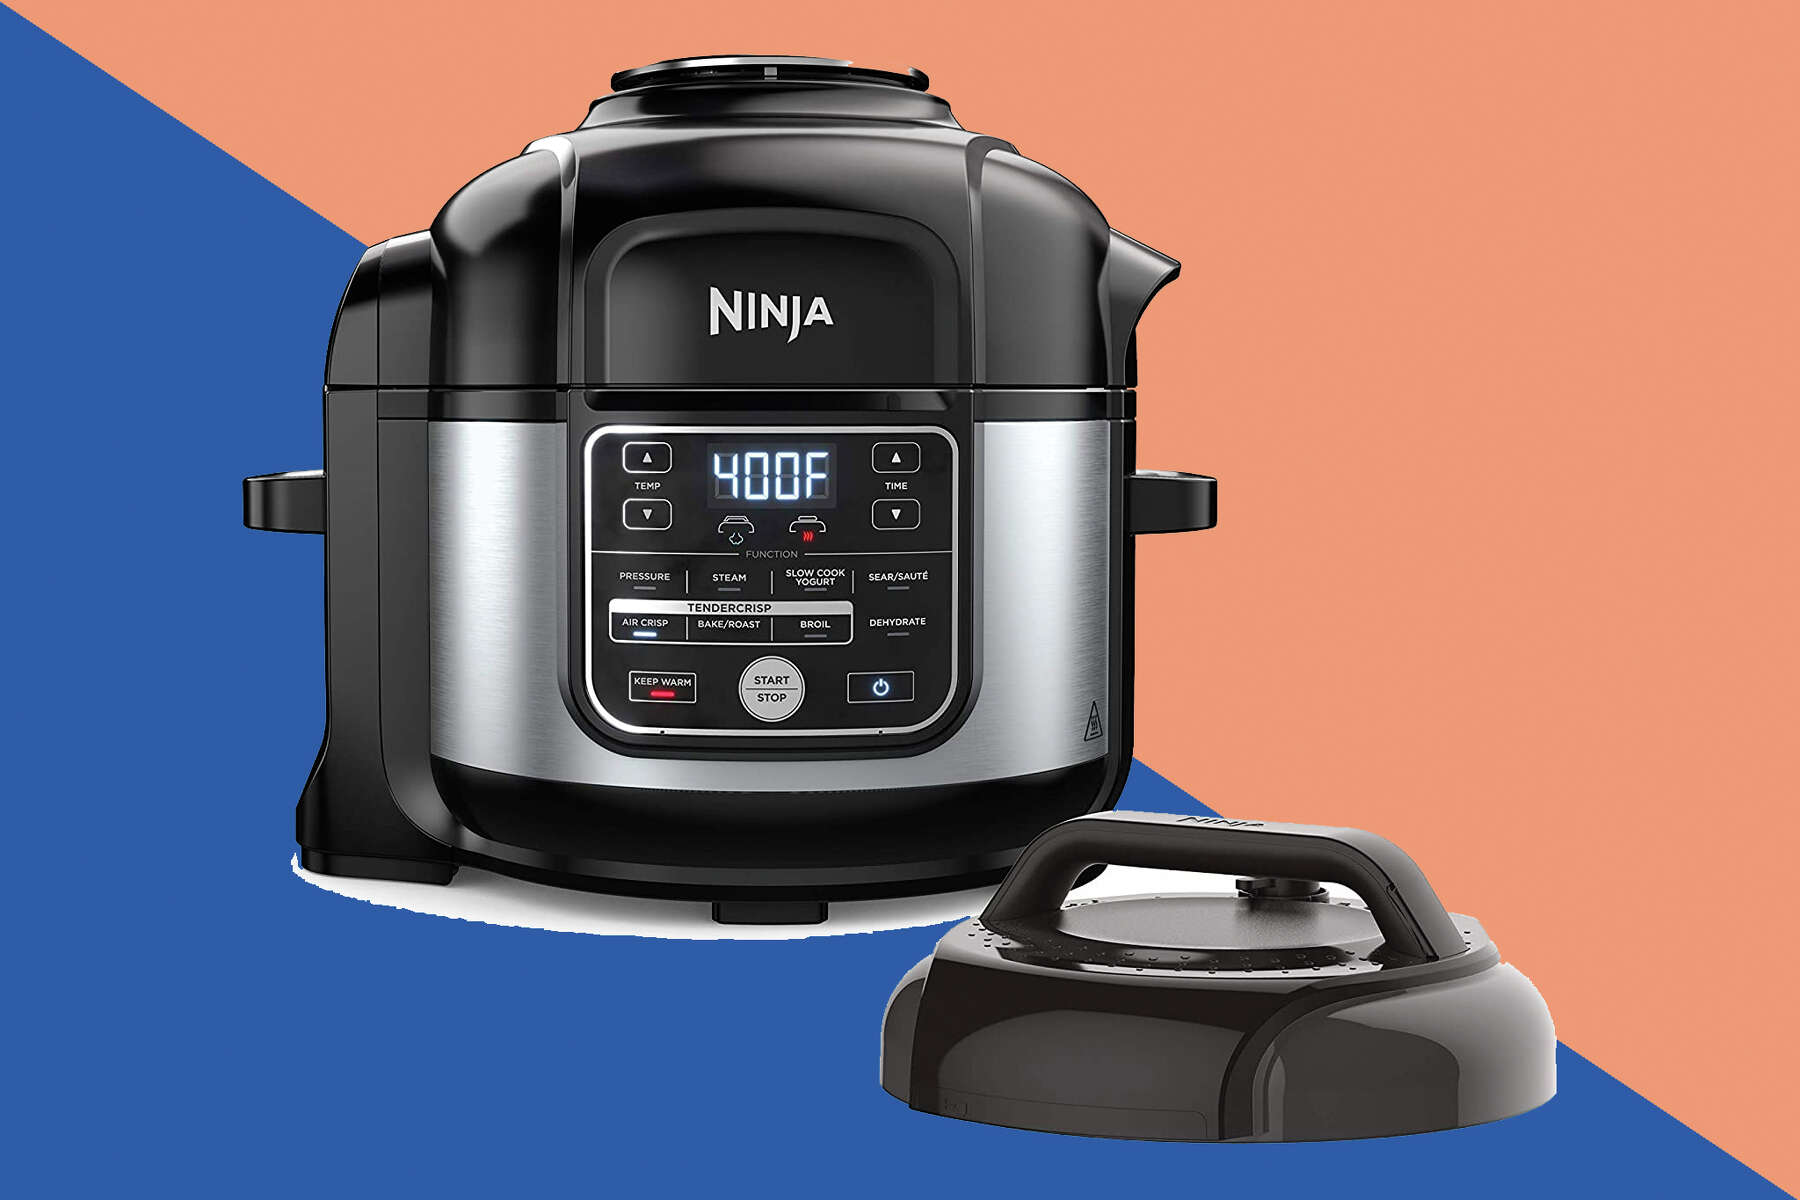  Ninja OS301 Foodi 10-in-1 Pressure Cooker and Air